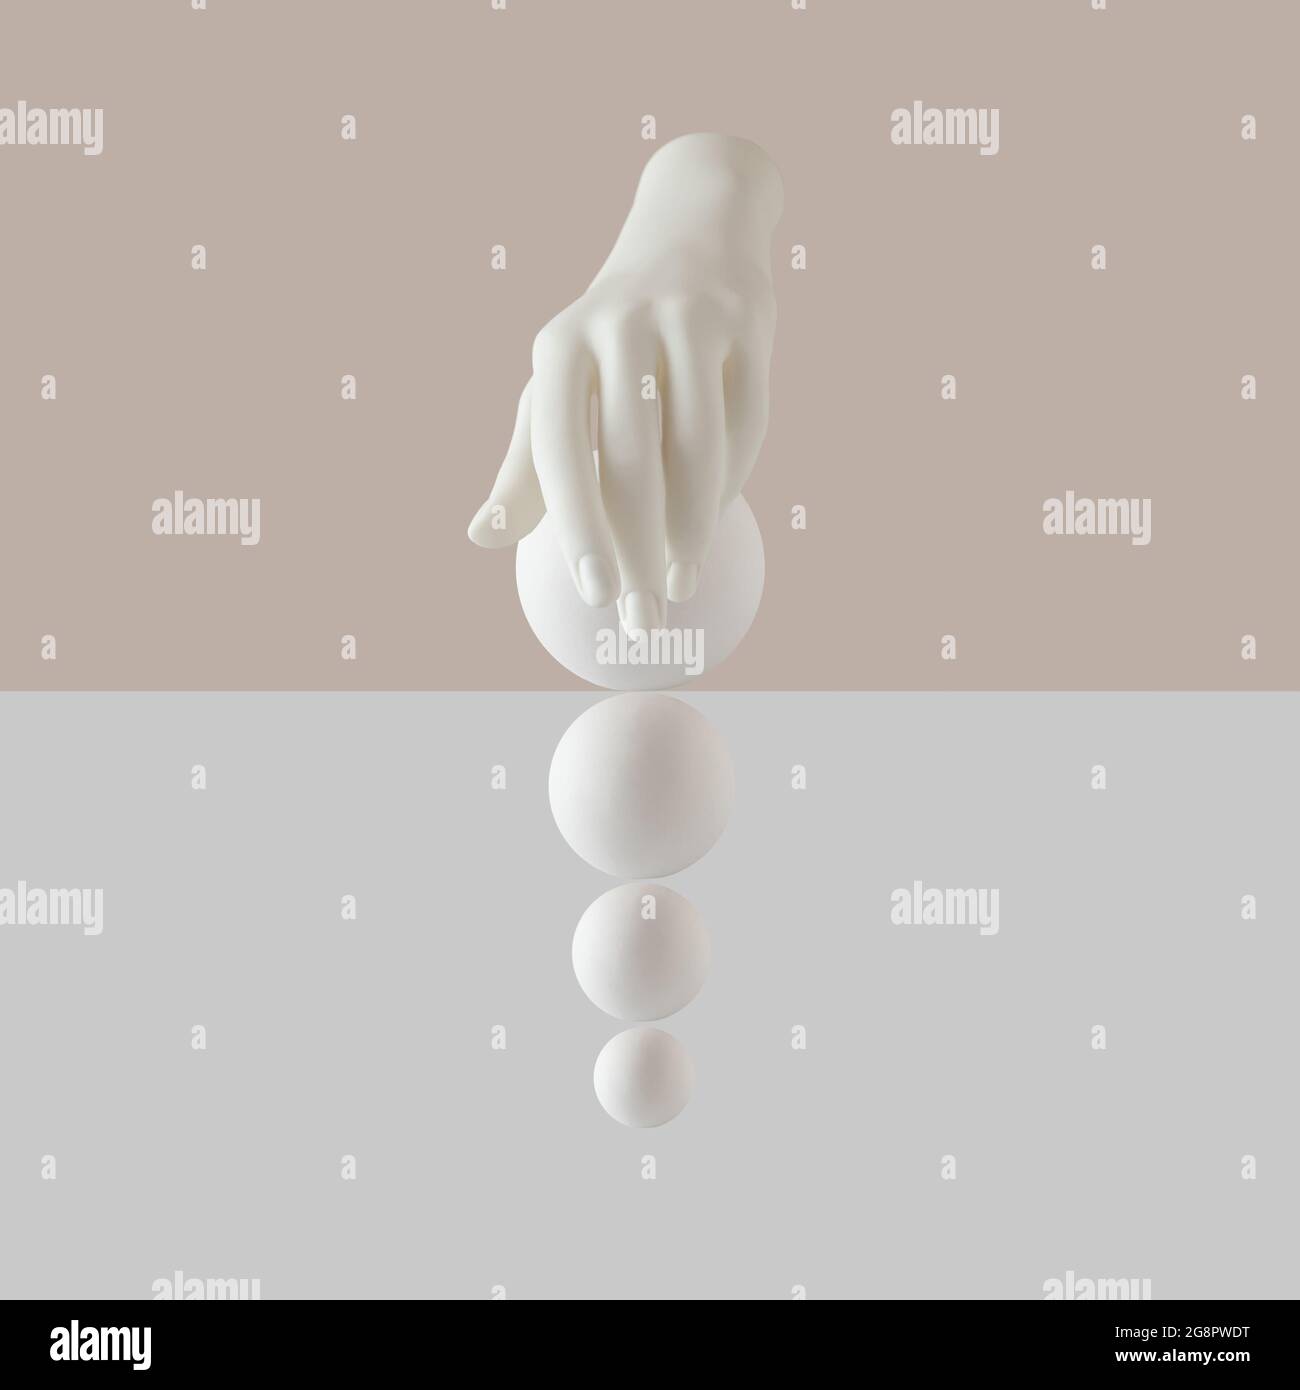 Arrangement créatif avec main artificielle et boules blanches sur fond beige pastel et blanc. Concept d'idée surréaliste minimal Banque D'Images